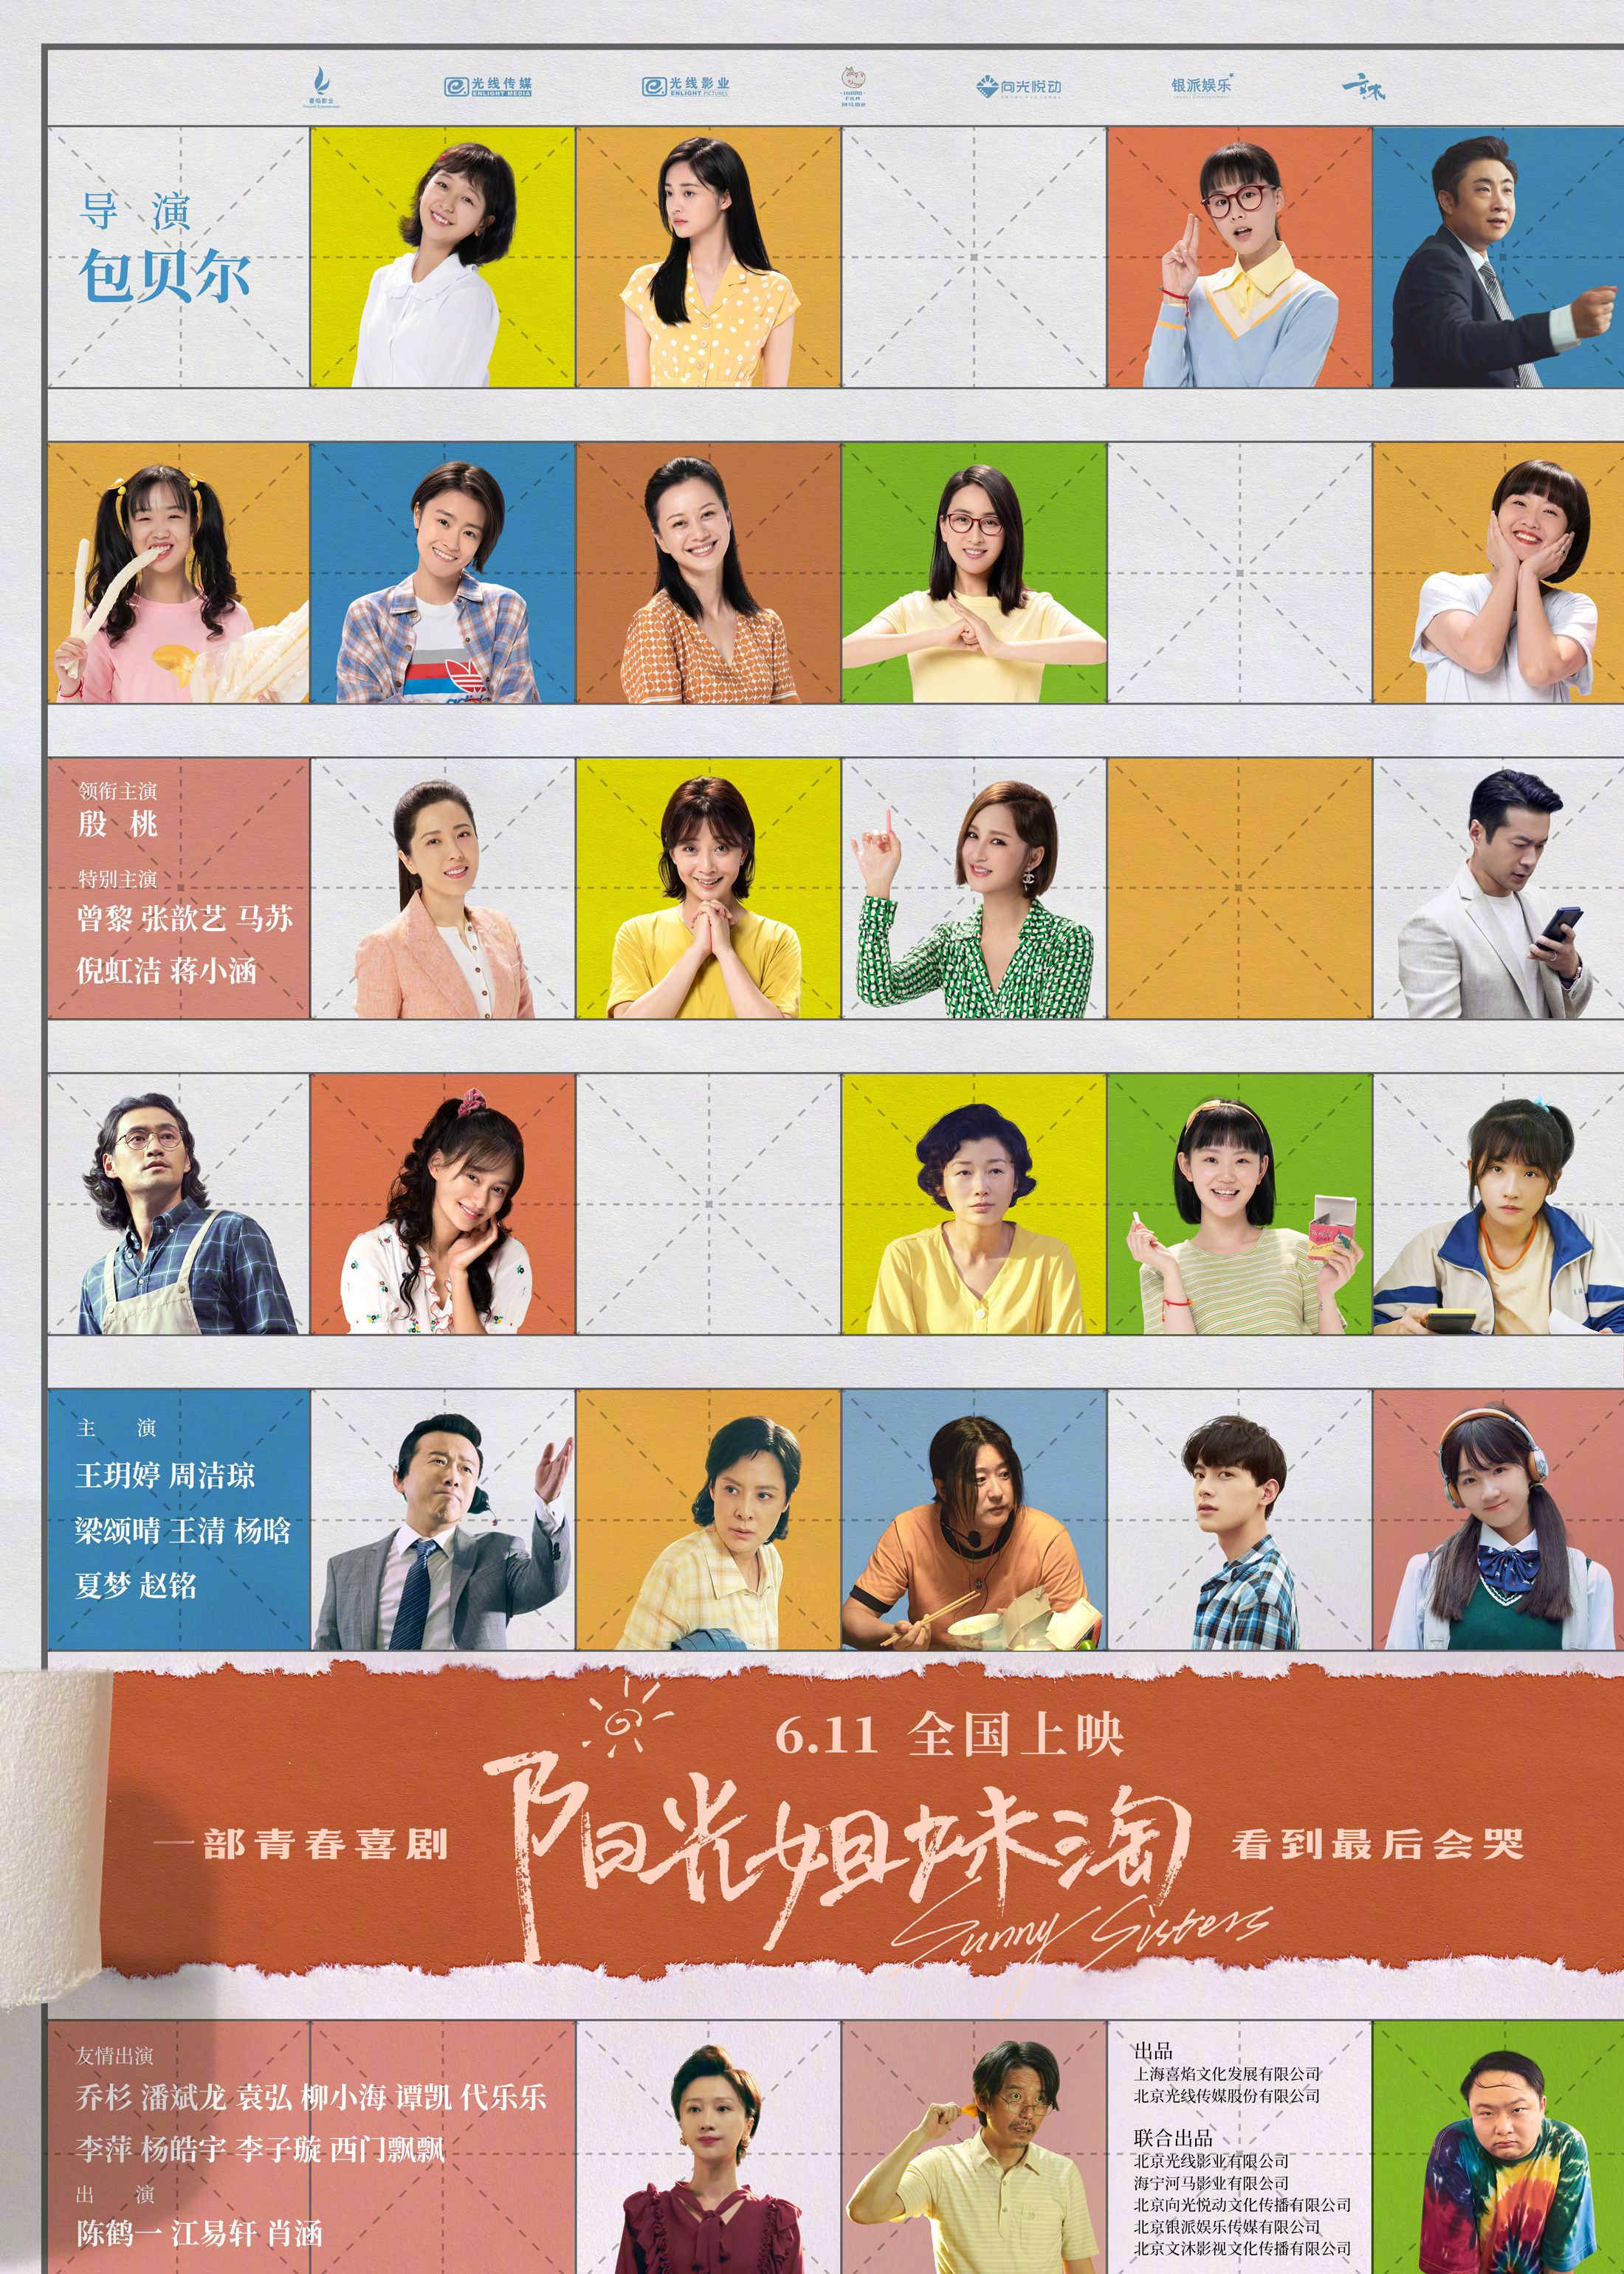 阳光姐妹淘终极预告《阳光姐妹淘》同时发布全阵容海报